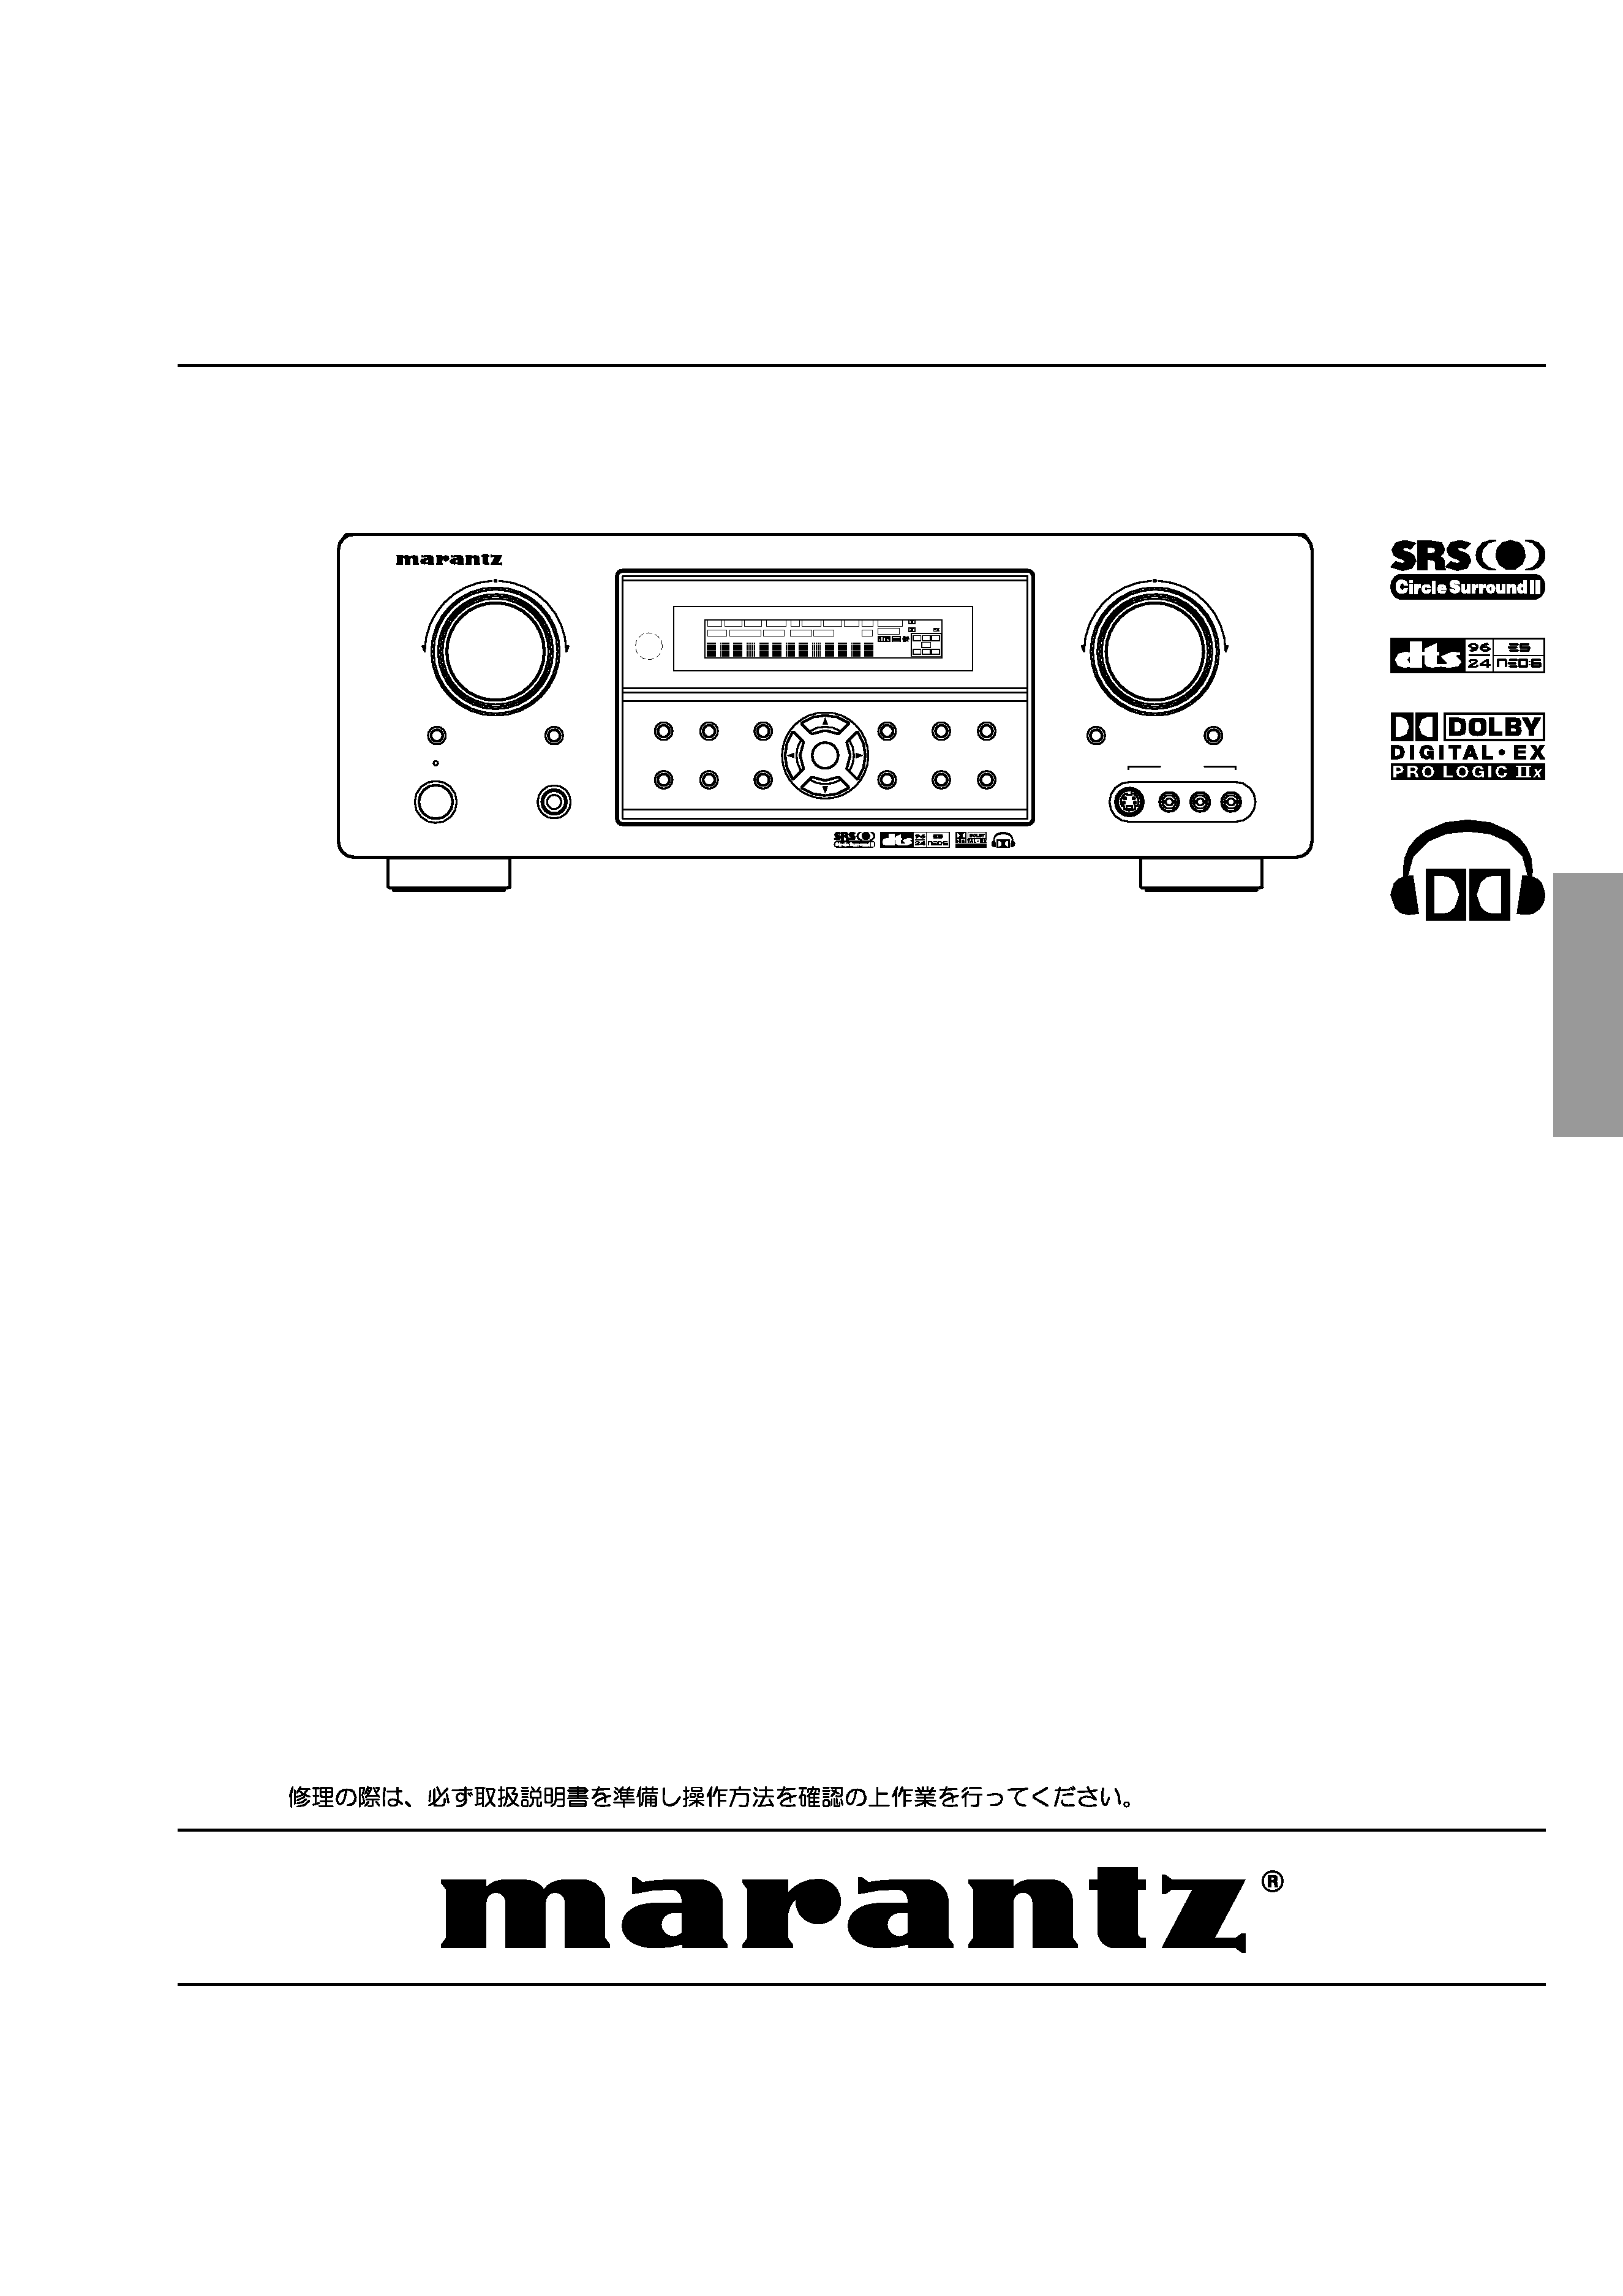 Service Manual for MARANTZ SR5500 - Download